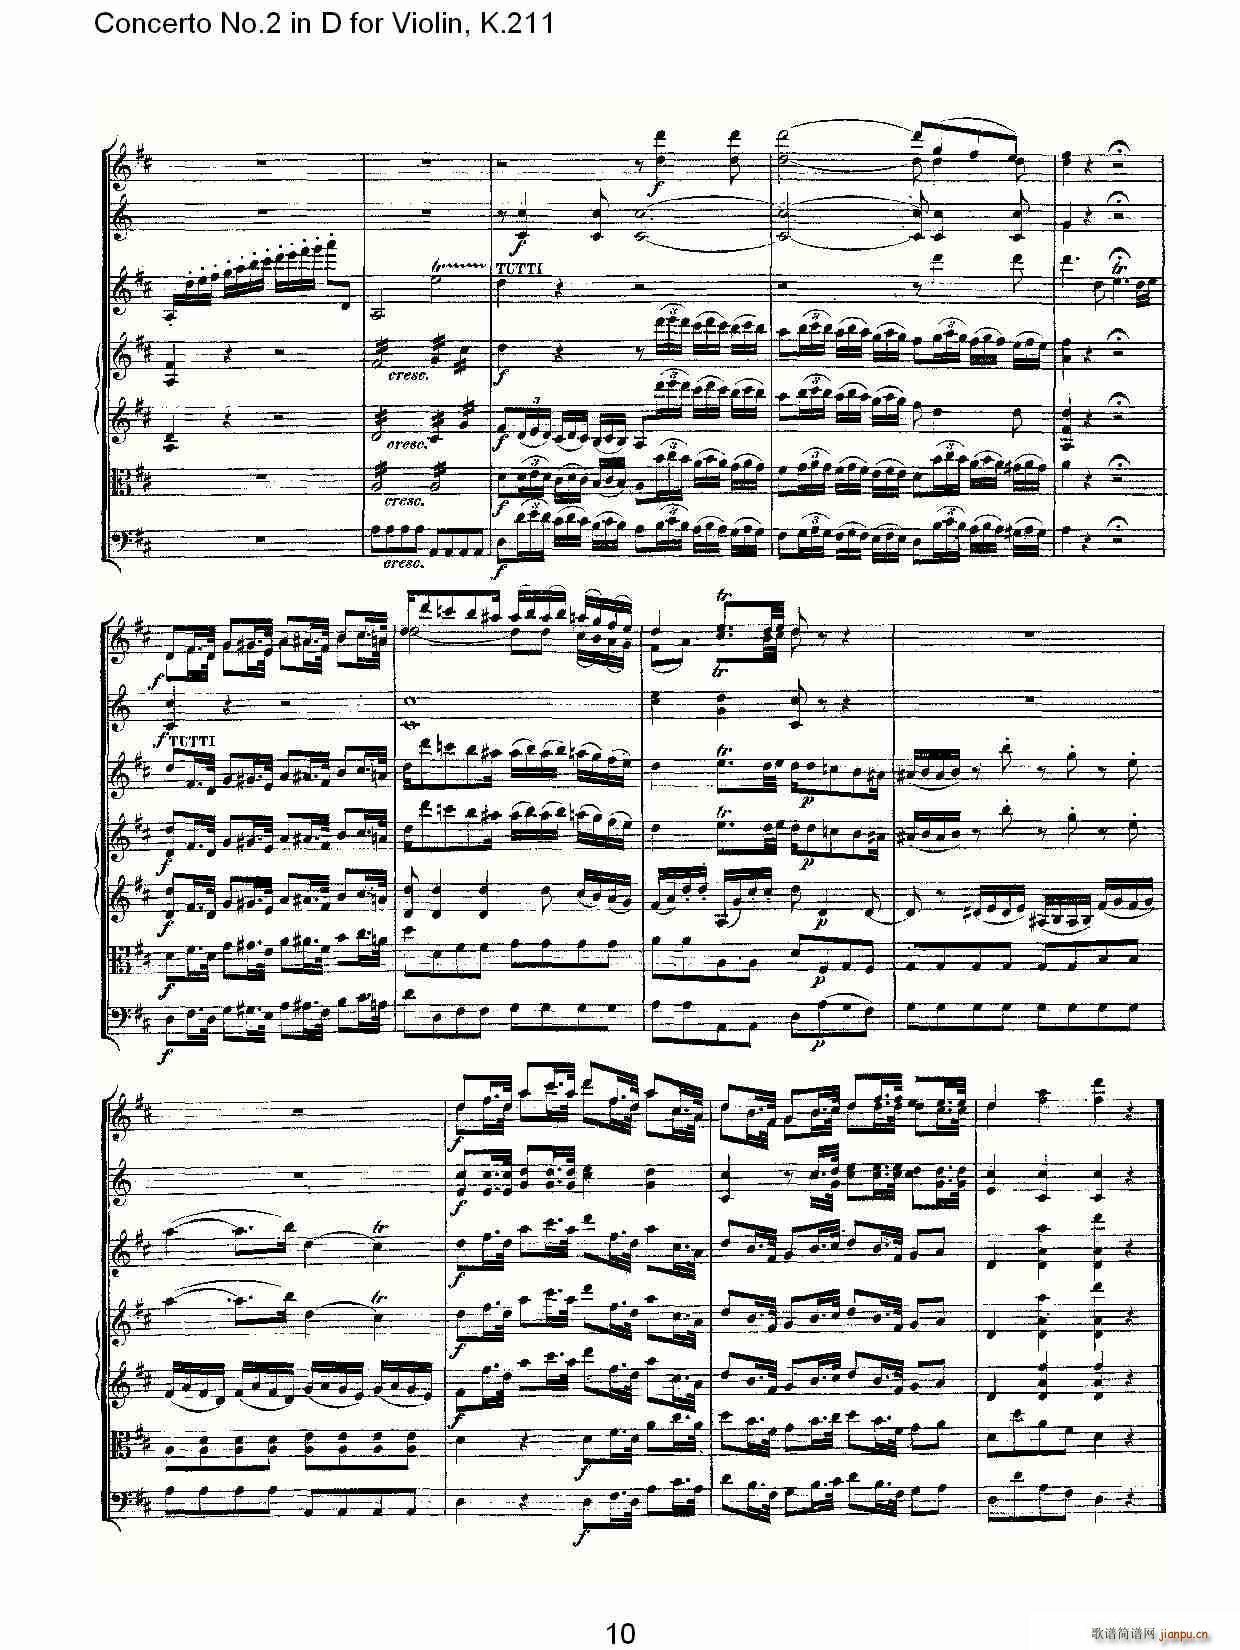 Concerto No.2 in D for Violin, K.211(小提琴谱)10